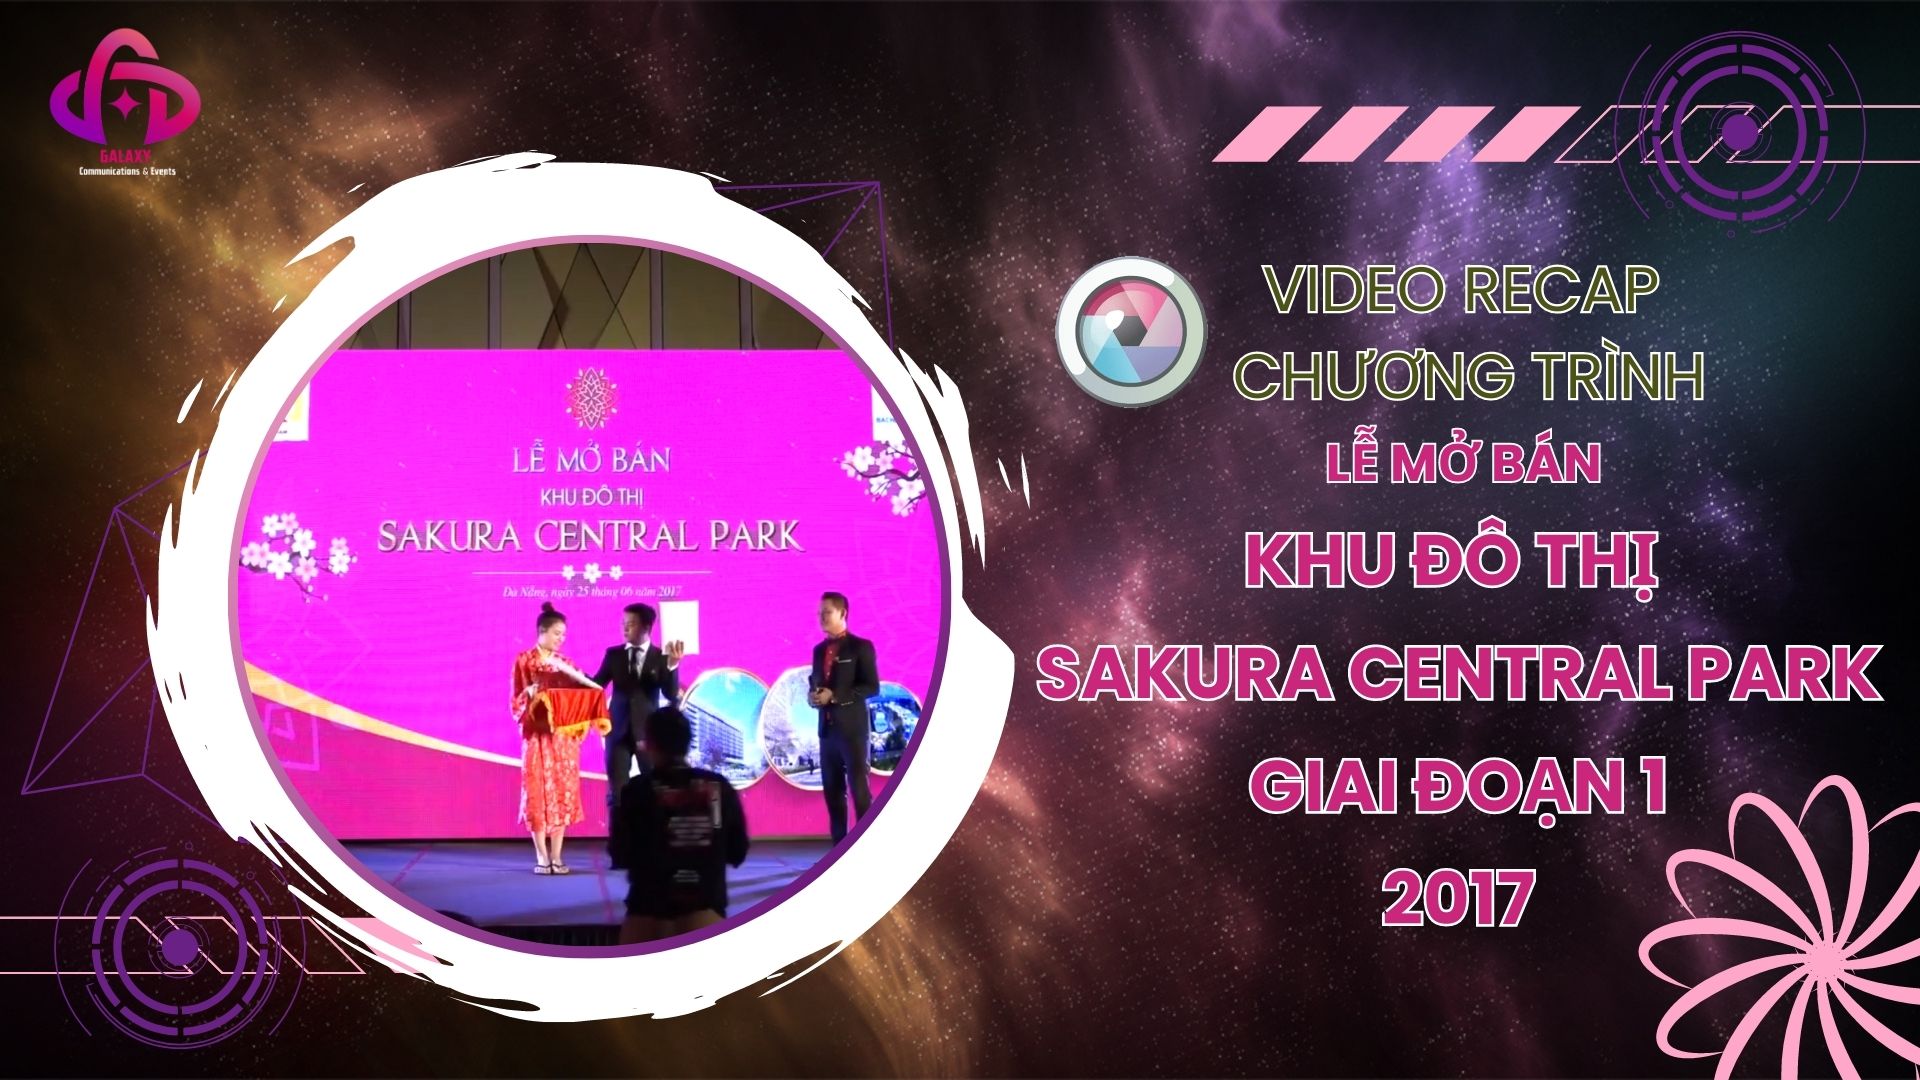 [Official Video Recap] Lễ mở bán khu đô thị Sakura Central Park giai đoạn 1